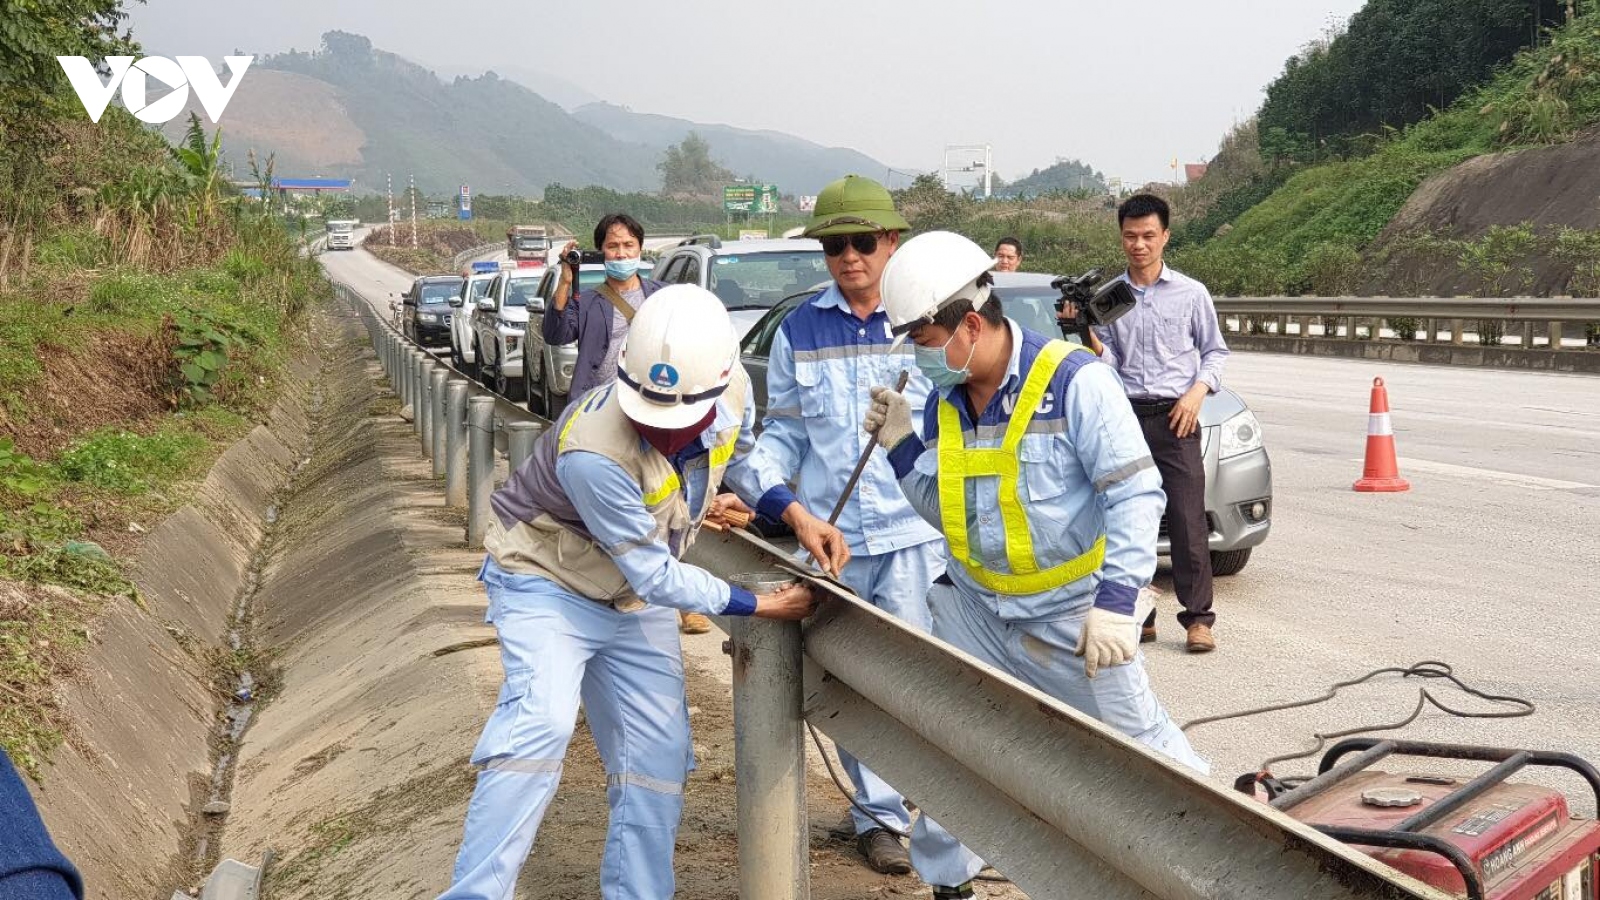 Tháo dỡ hộ lan cao tốc Nội Bài - Lào Cai là phá hoại tài sản quốc gia và sẽ bị khởi tố